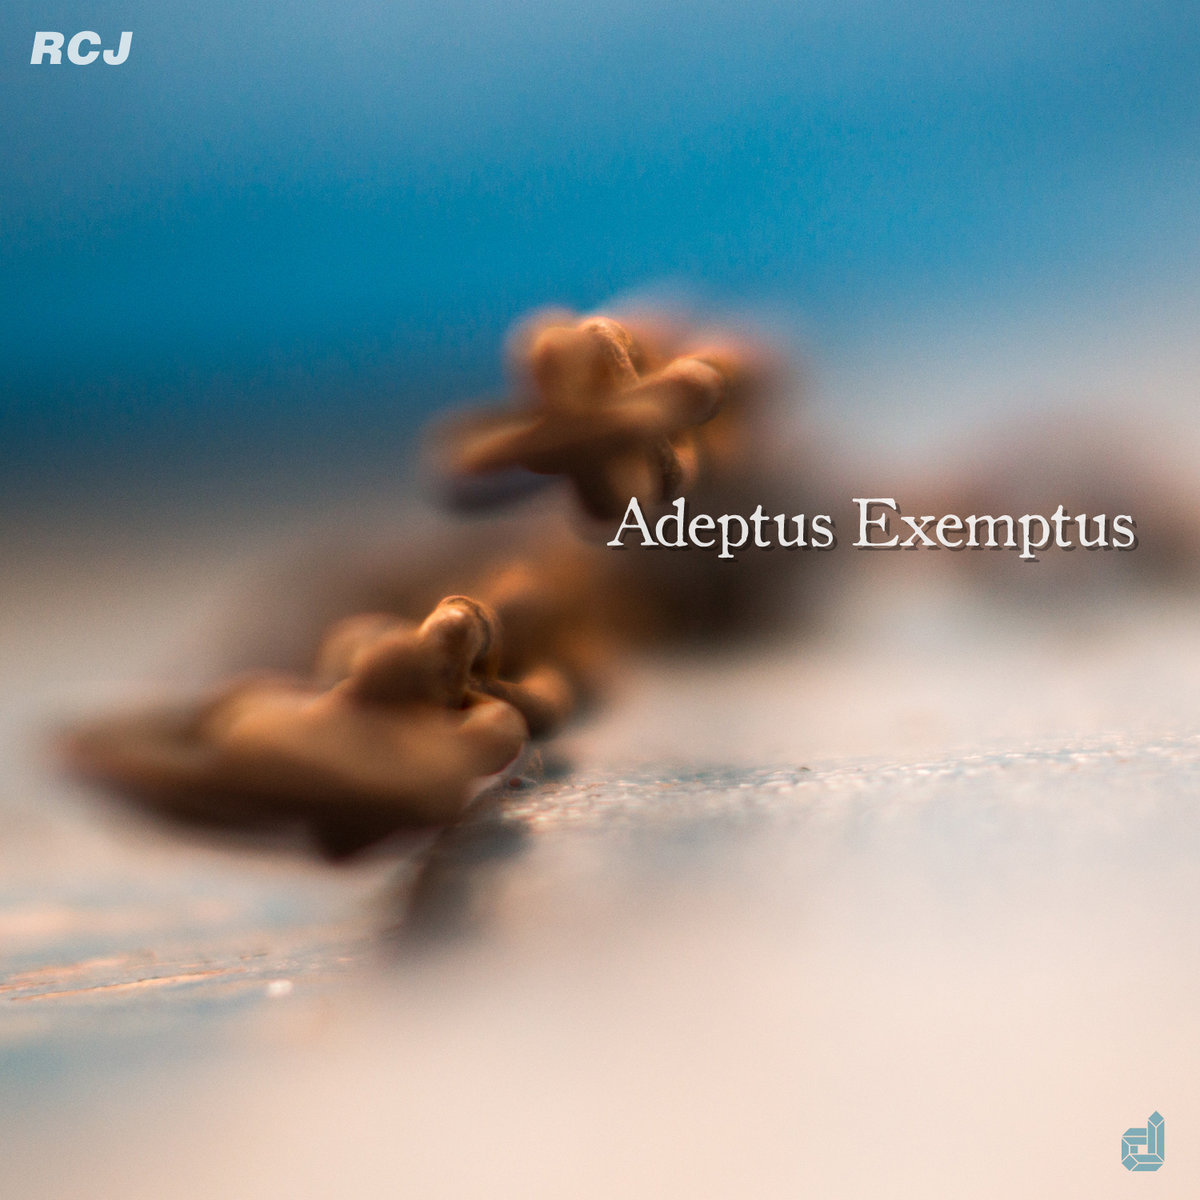 Adeptus Exemptus by RCJ